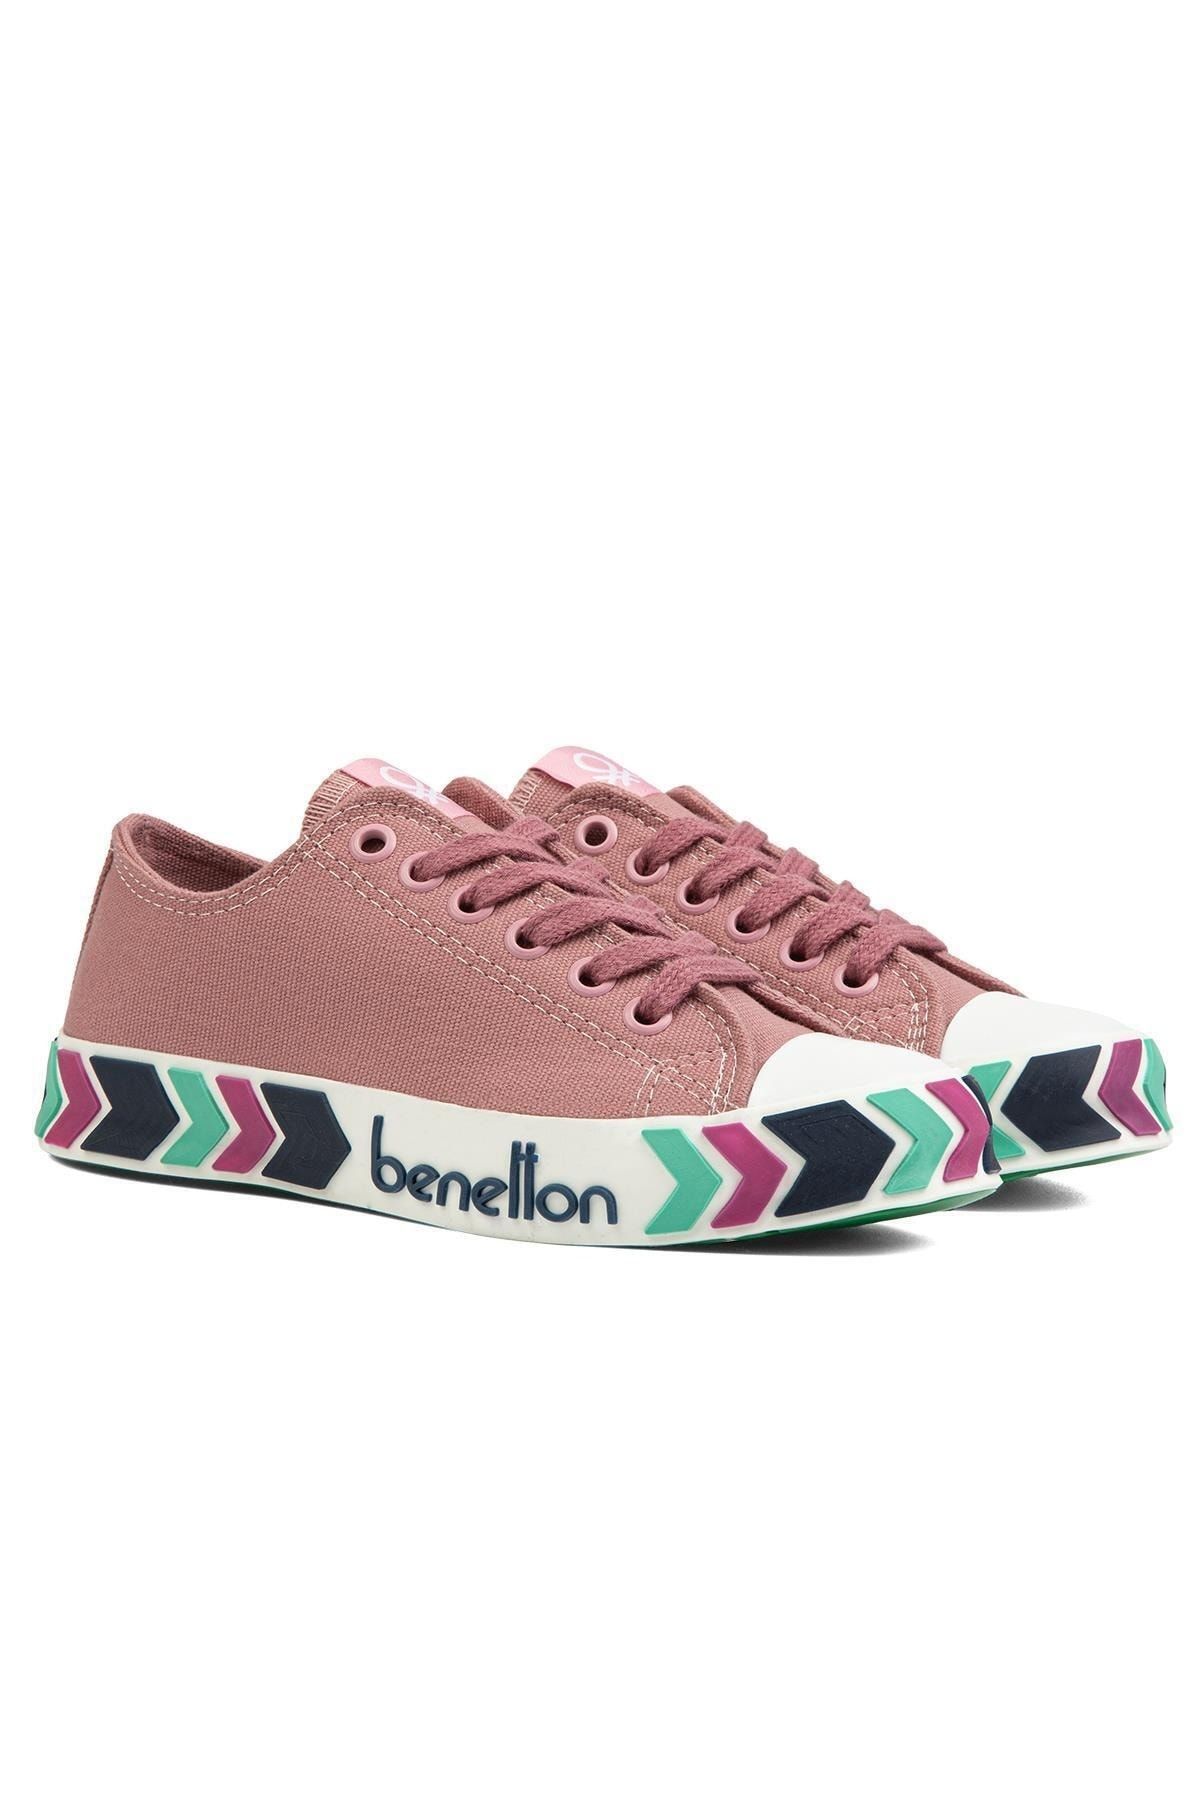 Benetton ® BN-90620-Gul Kurusu - Kadın Spor Ayakkabı